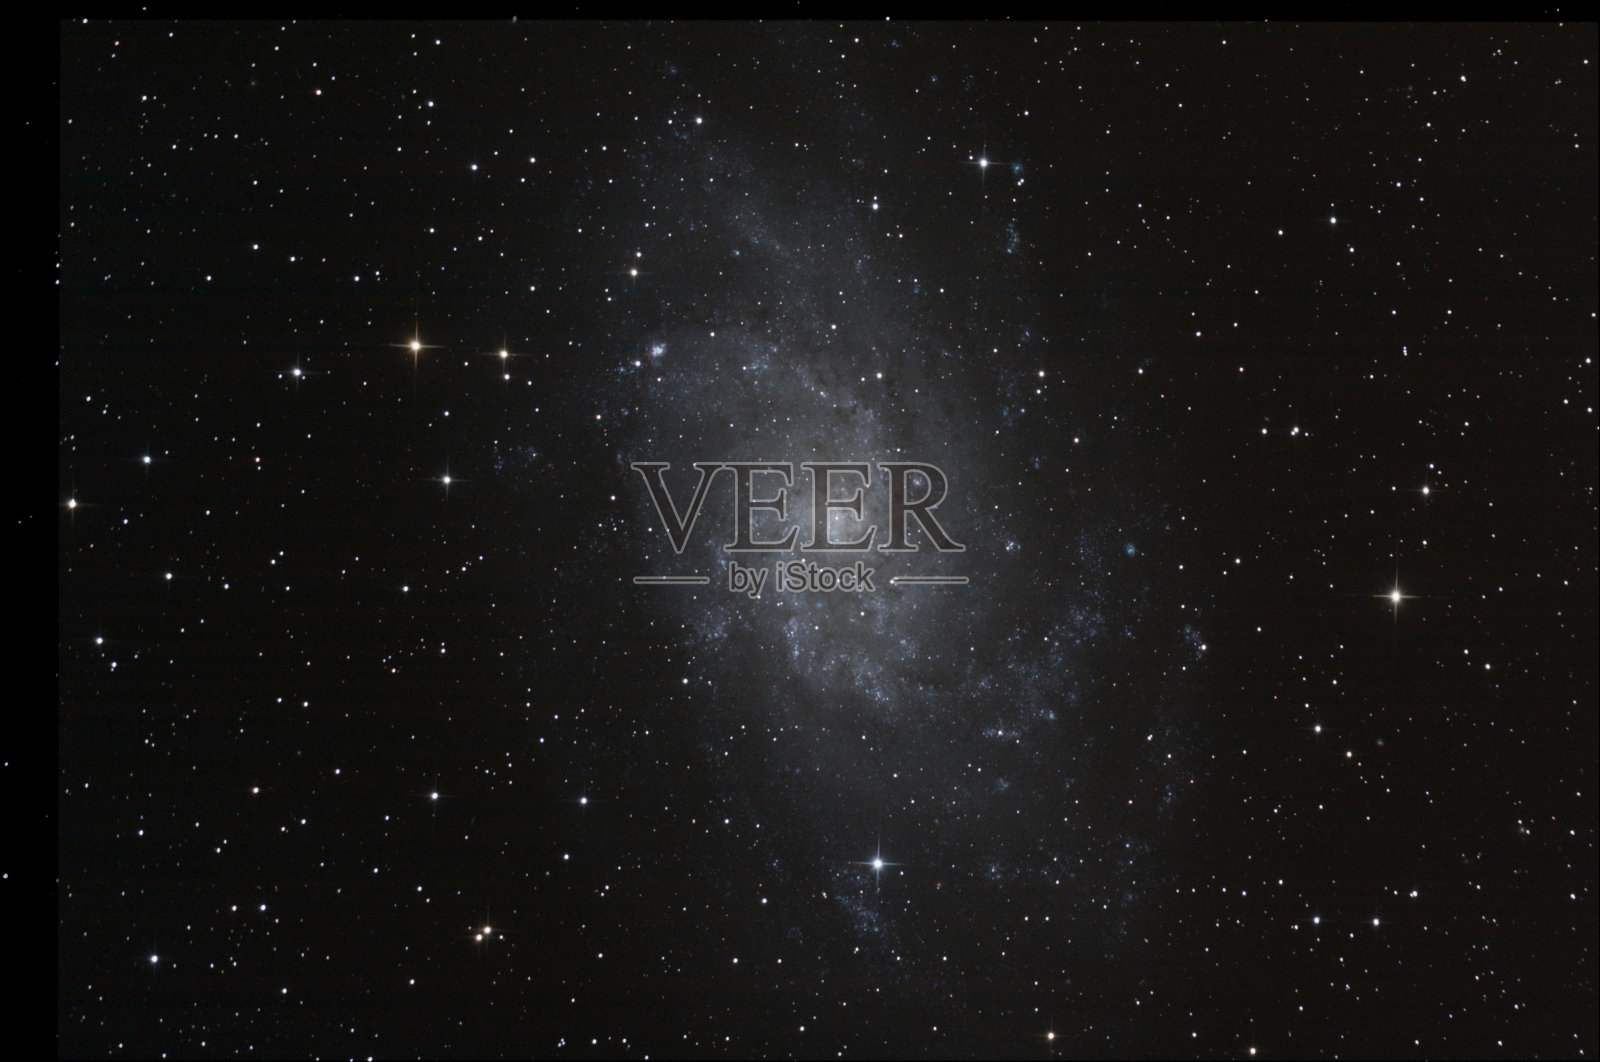 银河三角形(M33 / NGC598)照片摄影图片